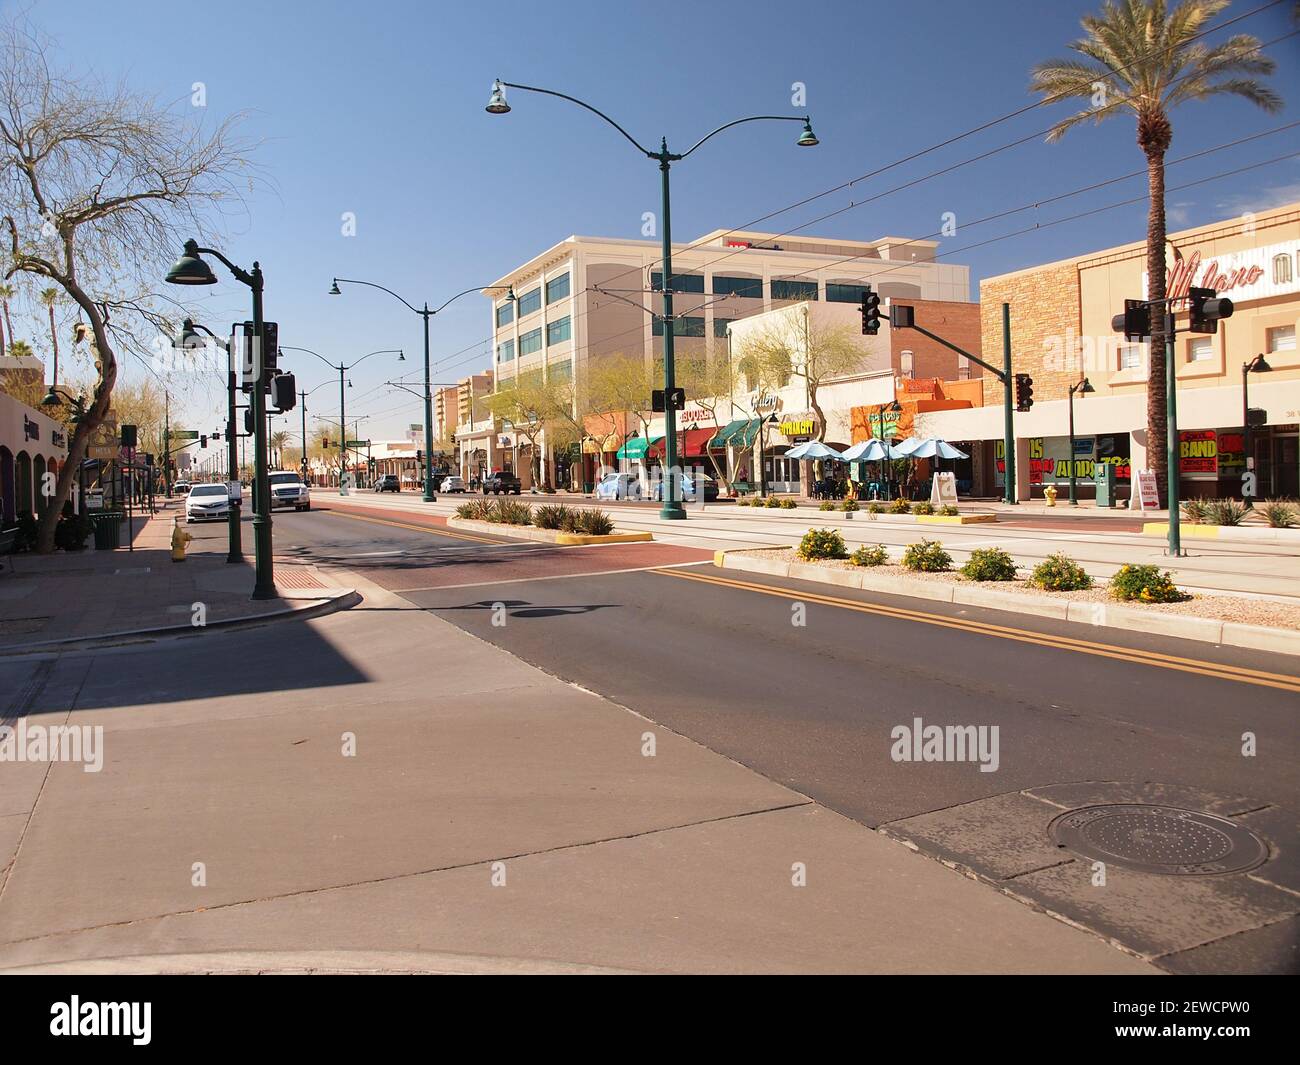 Mesa, Arizona centre-ville montrant le développement moderne et le système de rail léger. Mesa est une ville propre et animée, juste à l'est de Phoenix, dans le sud-ouest américain. Banque D'Images